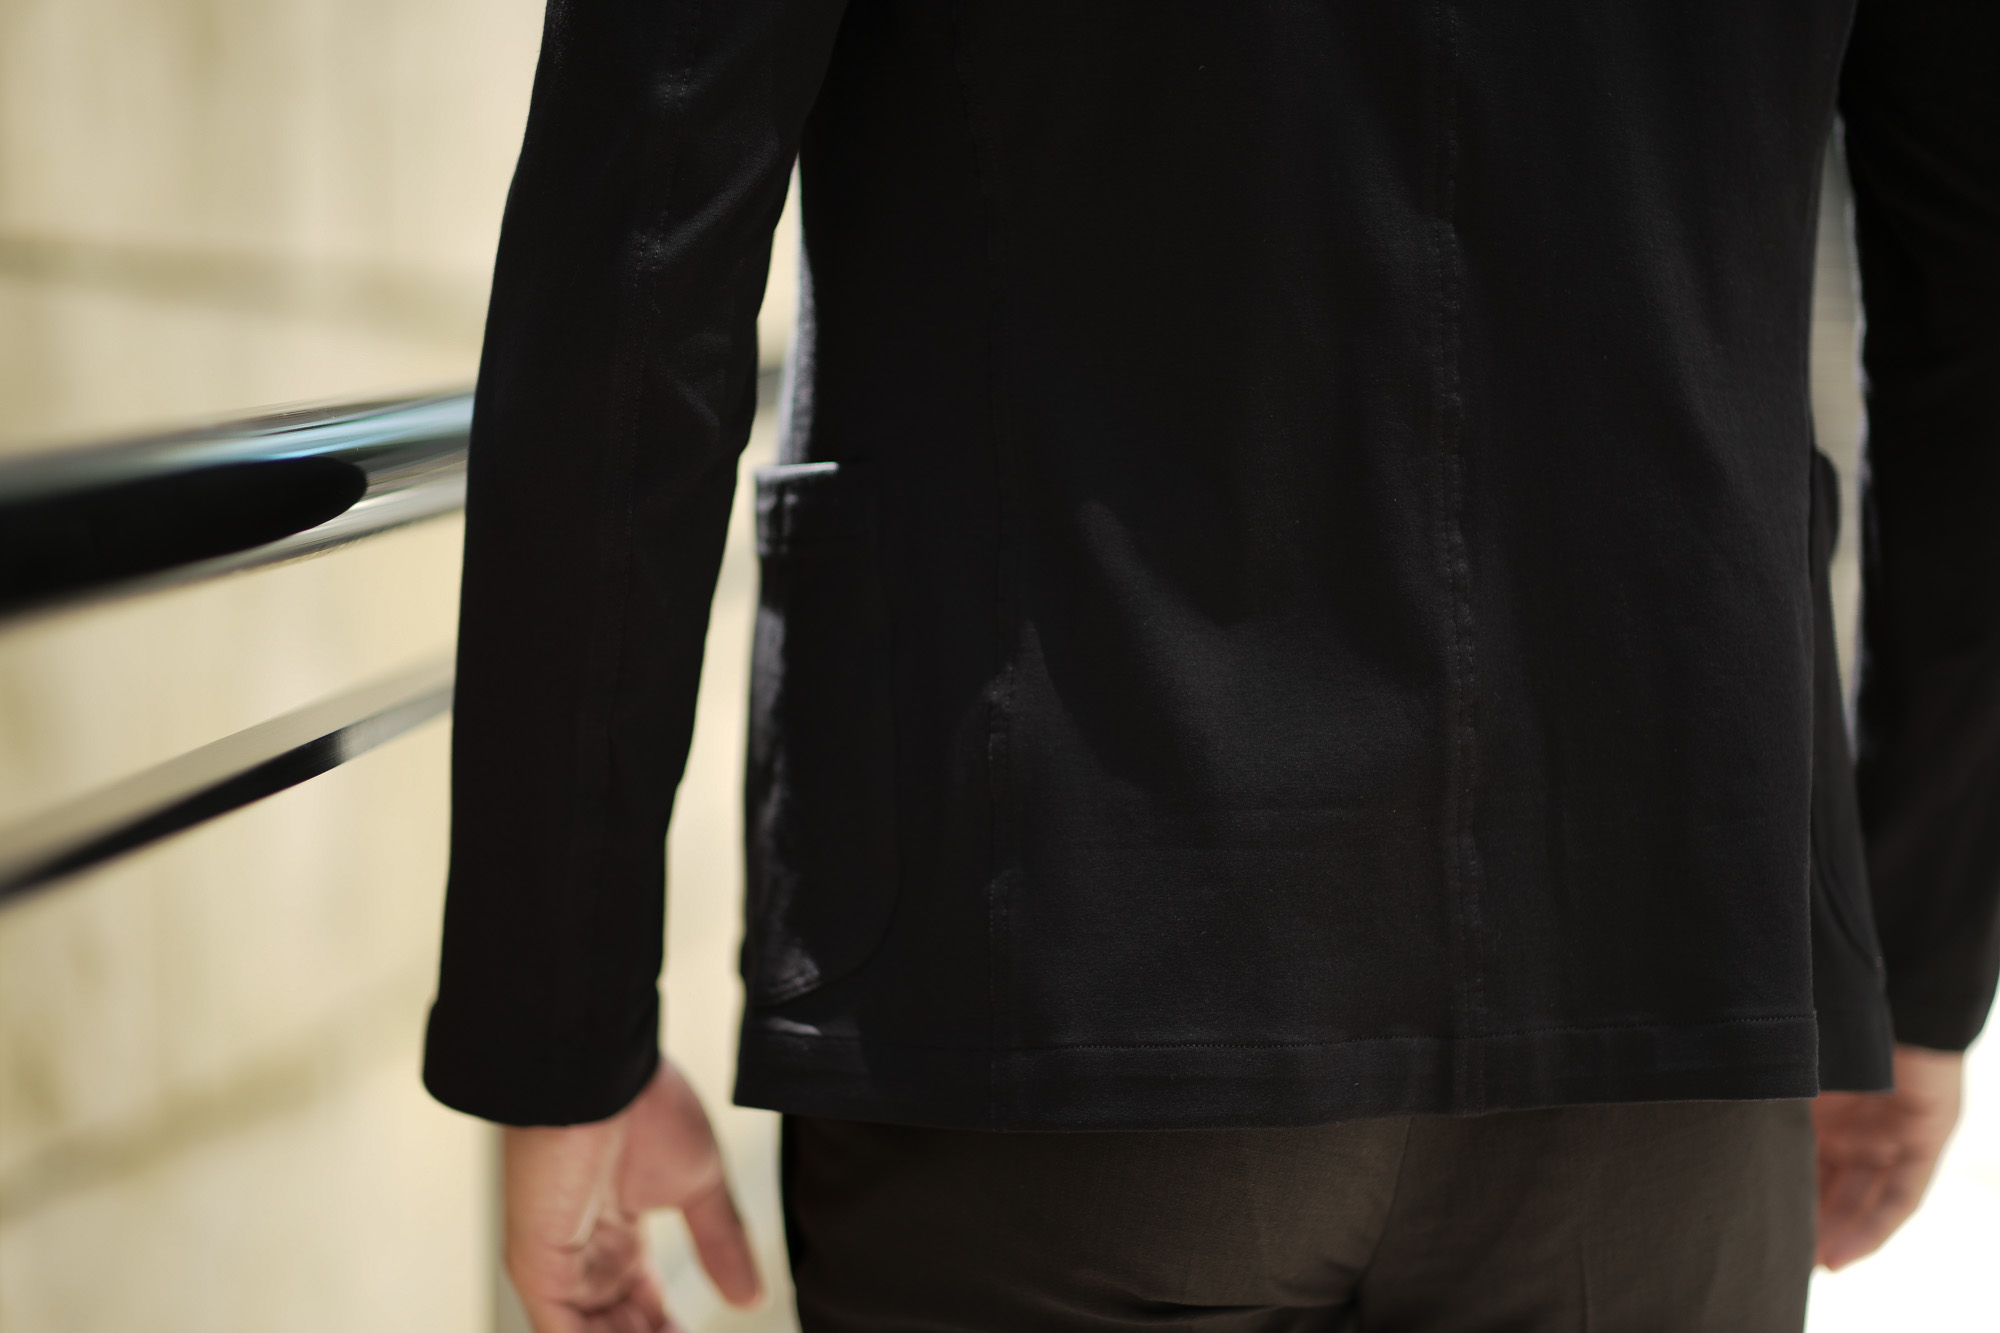 Cruciani (クルチアーニ) Cotton Jersey Jacket (コットンジャージージャケット) Micro Smooth Cotton マイクロスムースコットン ニット ジャケット BLACK (ブラック・2000) made in italy (イタリア製) 2019 春夏新作 愛知 名古屋 altoediritto アルトエデリット